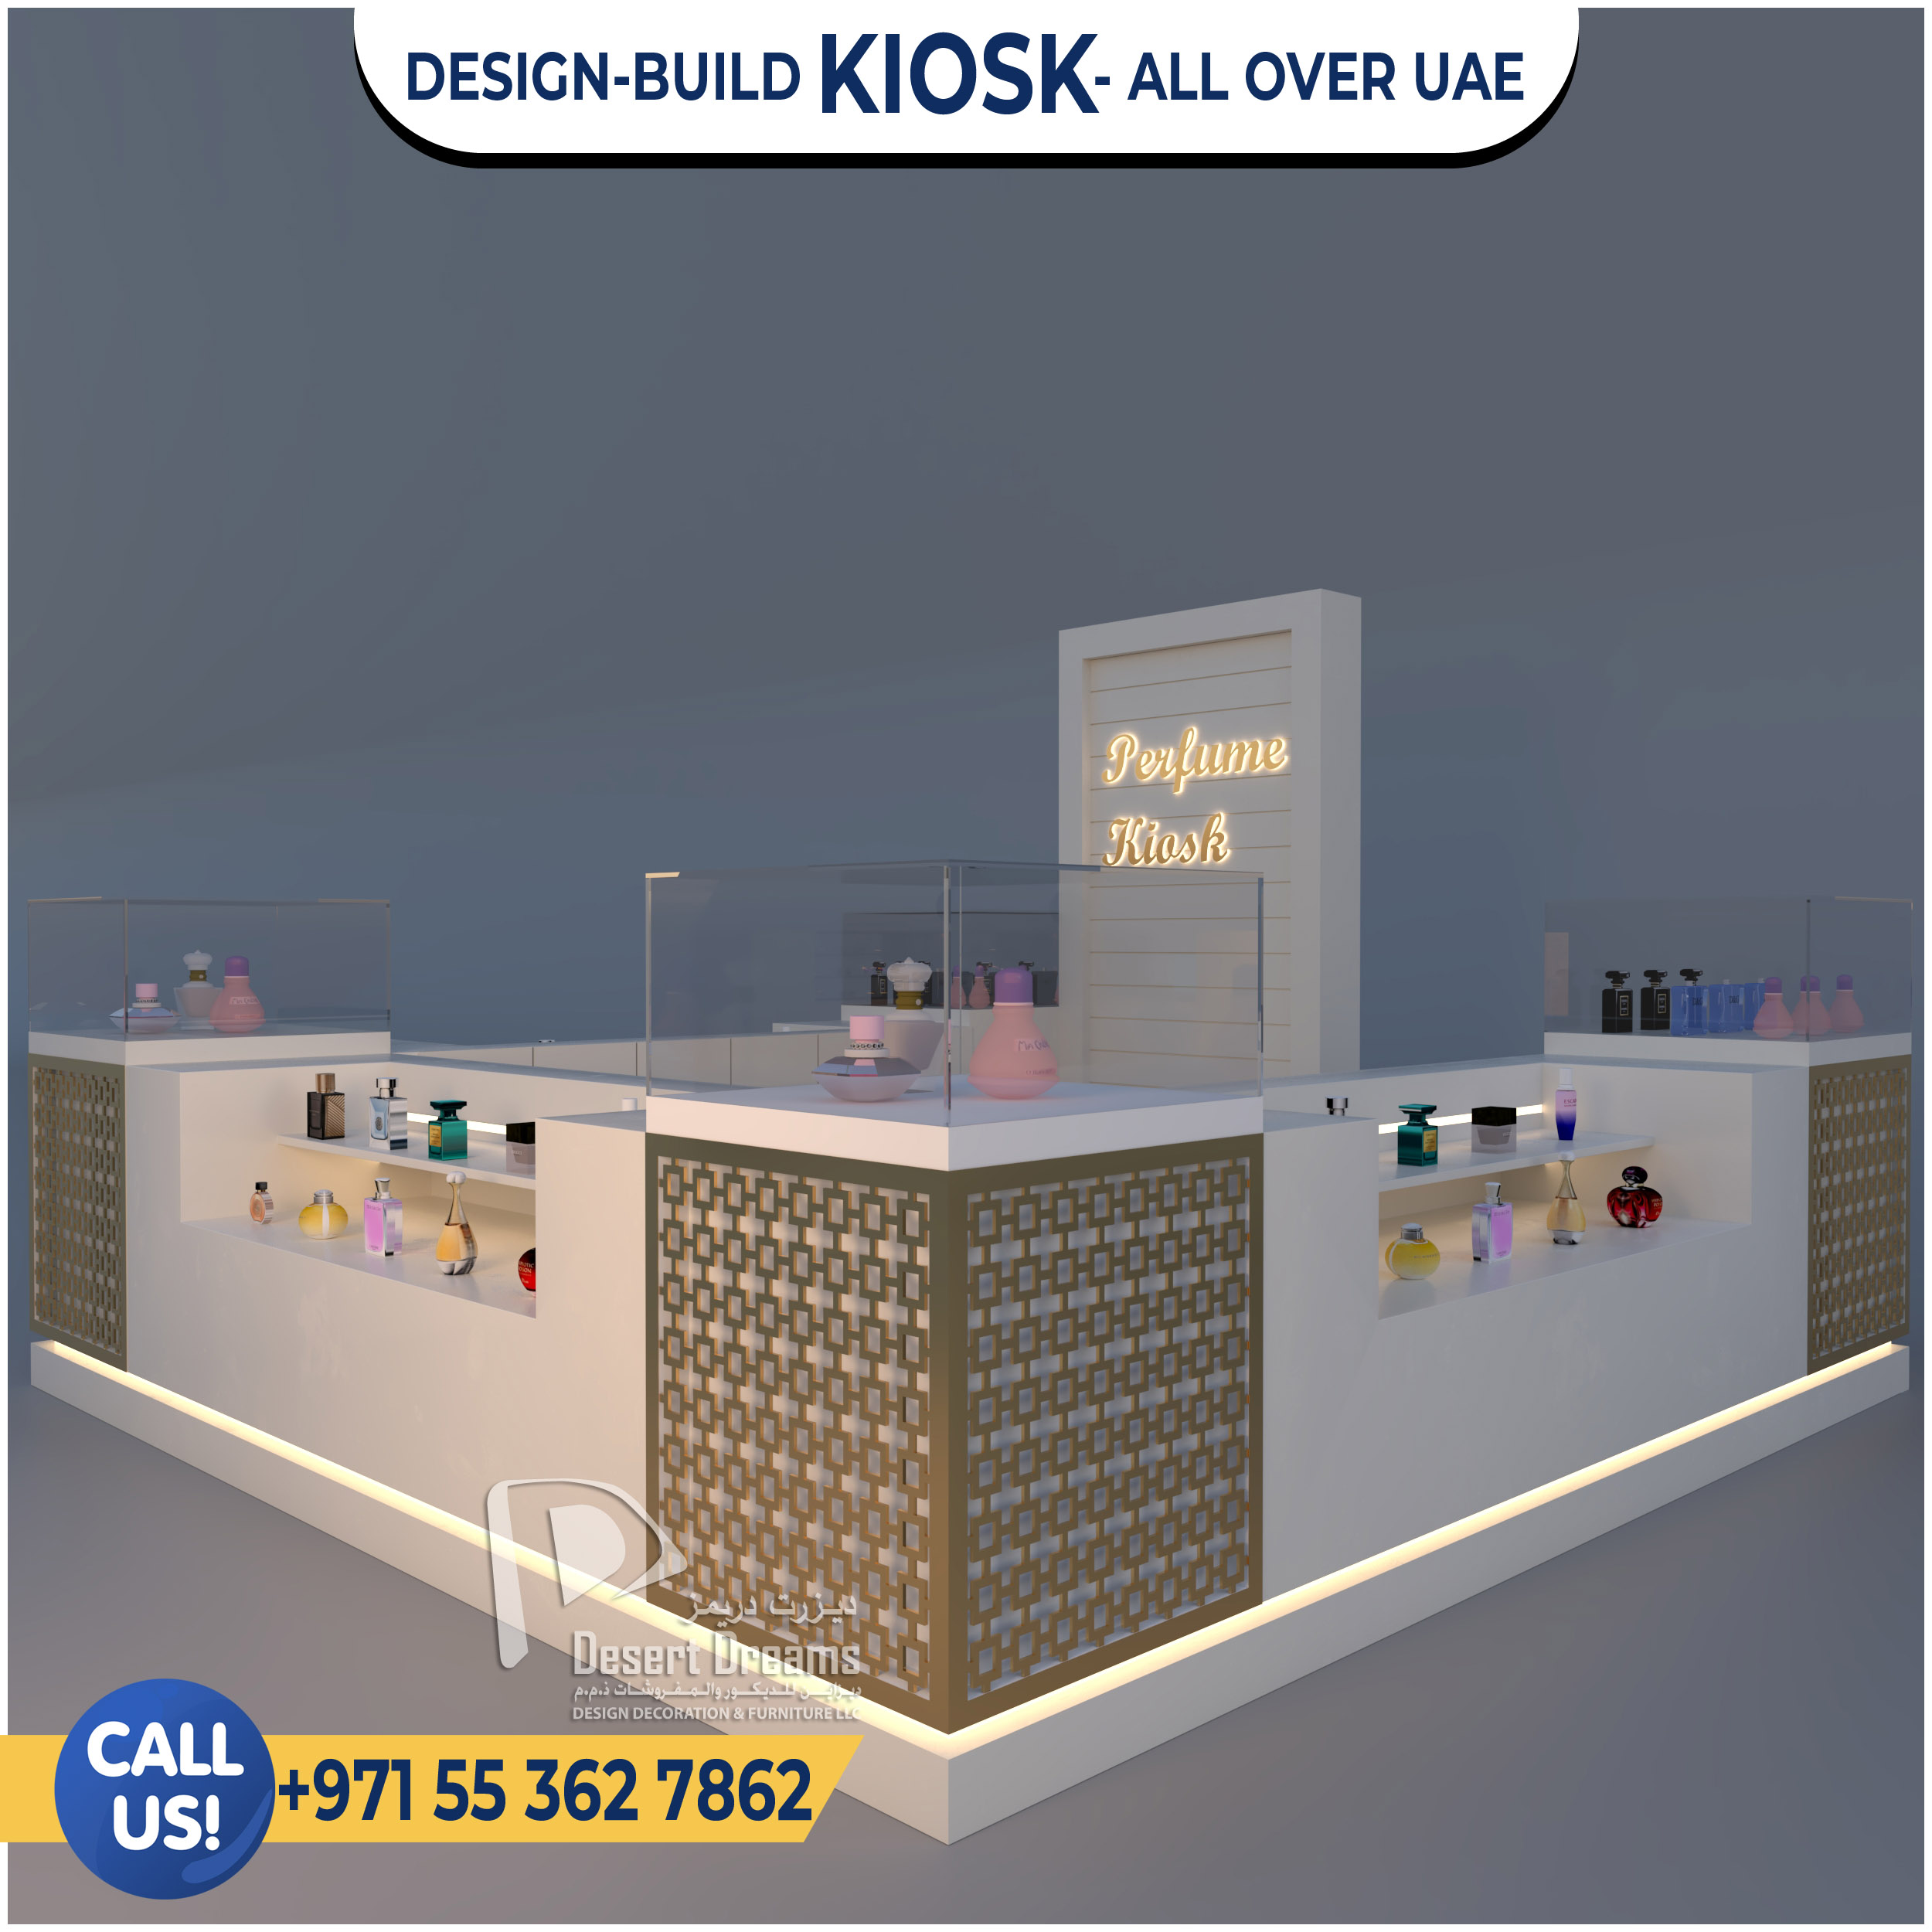 Perfumes Kiosk Suppliers in UAE.jpg